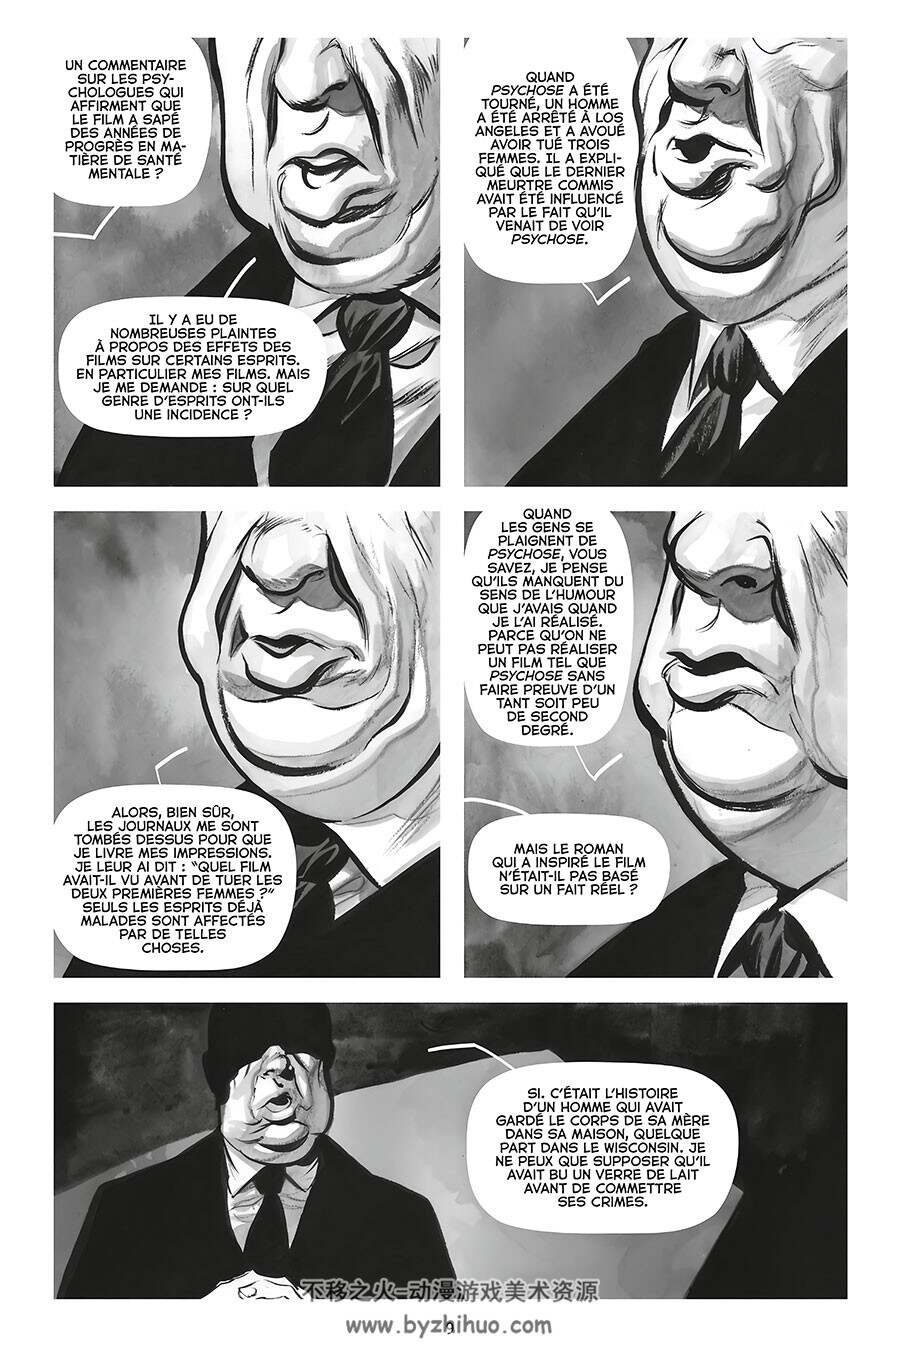 Ed Gein Autopsie D'un Tueur En Série 漫画 百度网盘下载